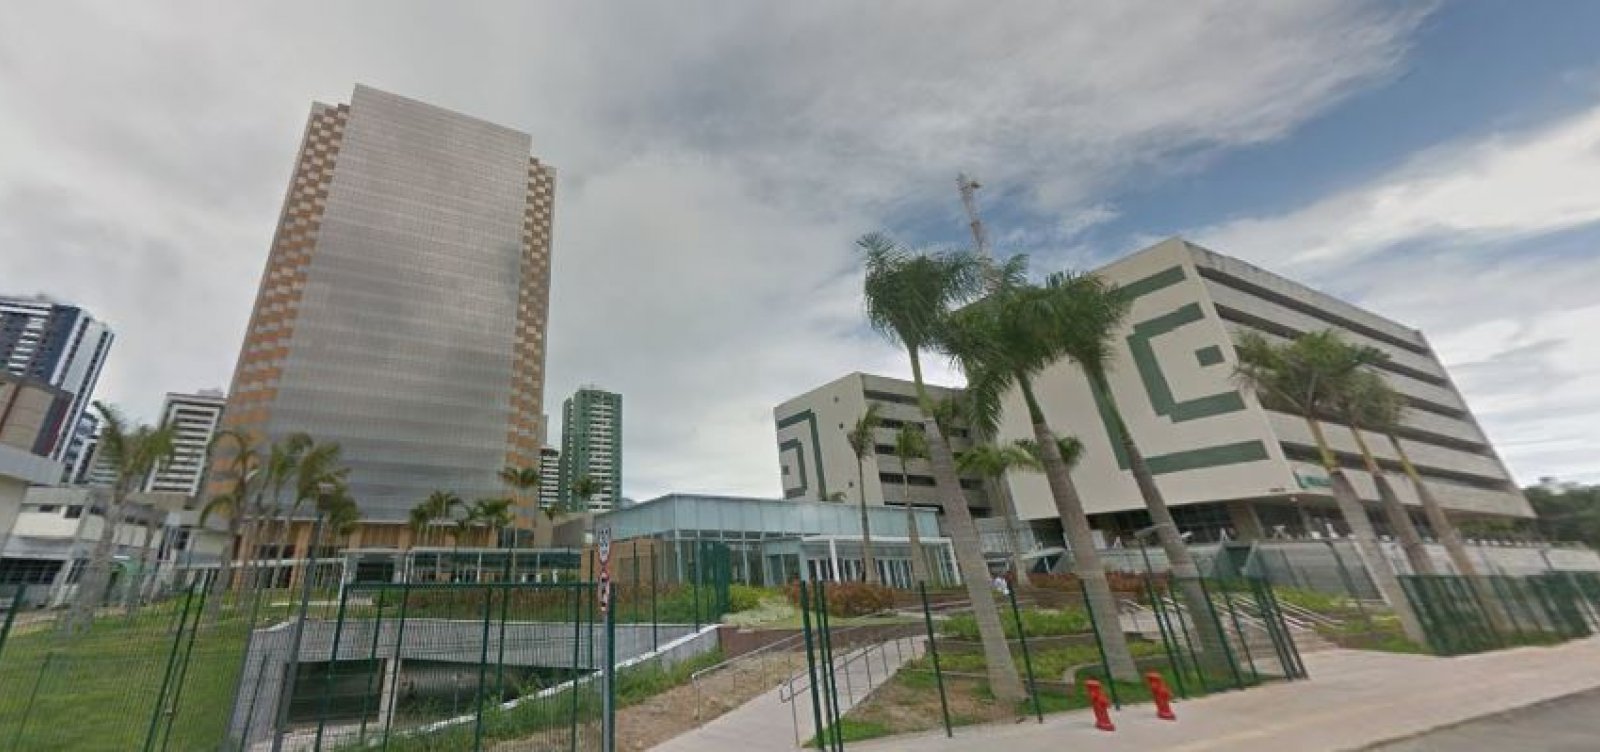  Petrobras nega demissão em massa após desocupação da Torre Pituba